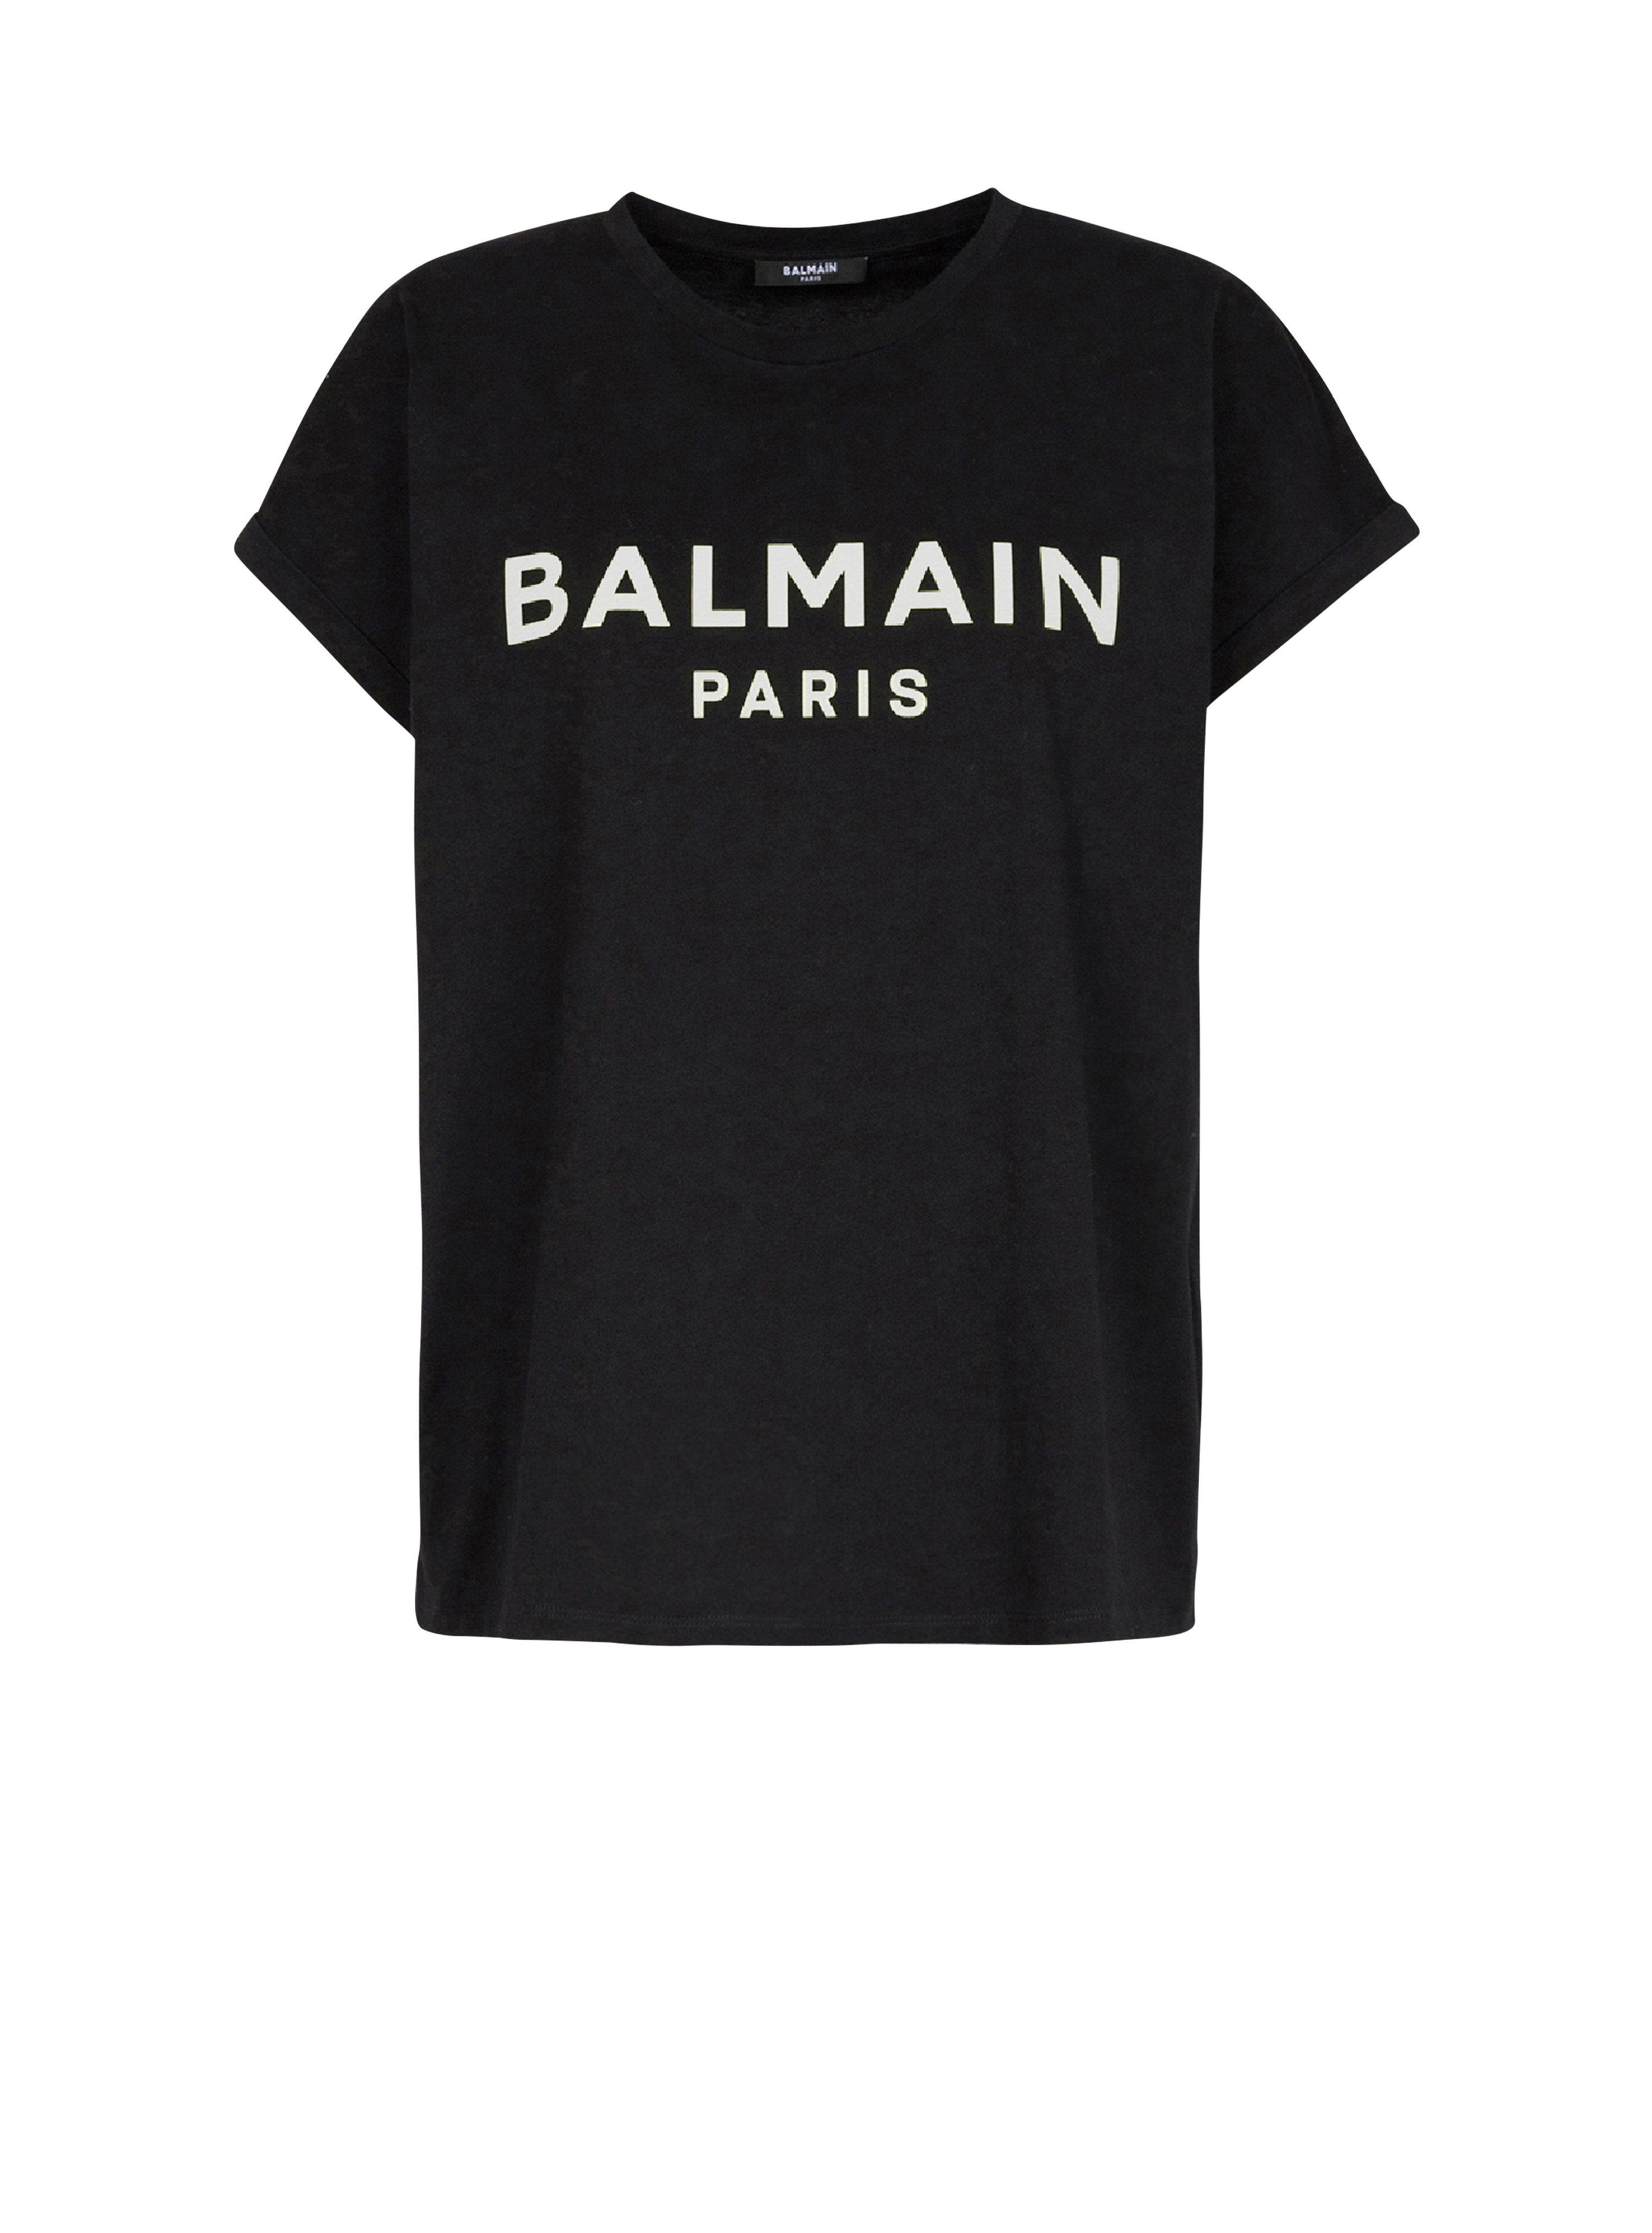 화이트 Balmain 로고 프린트 디테일 에코 디자인 코튼 티셔츠, 검정색